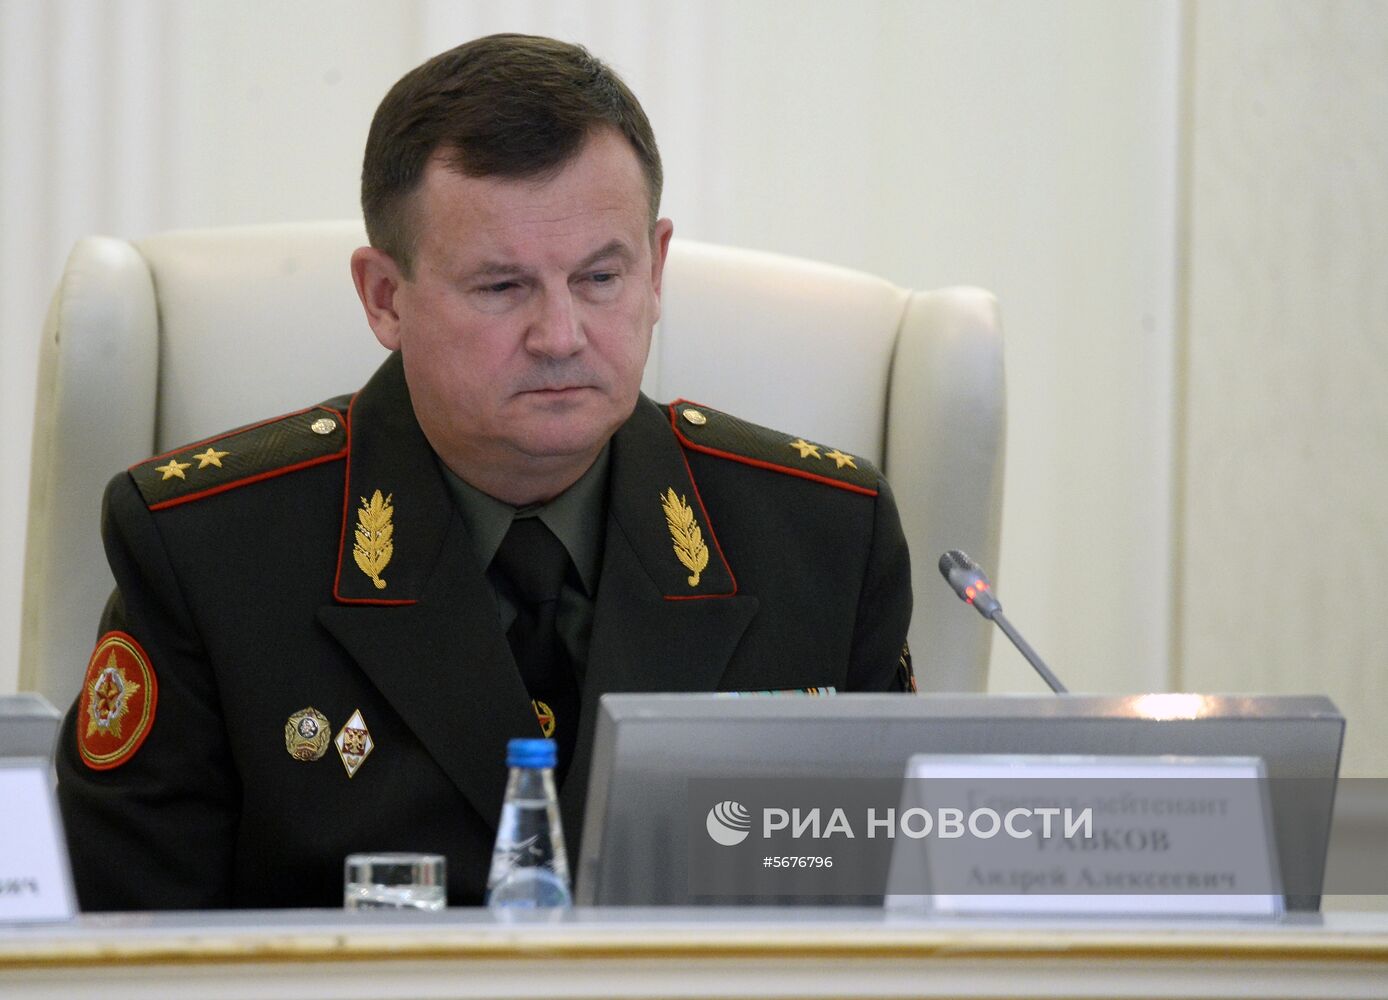 Заседание коллегии Минобороны РФ и Белоруссии